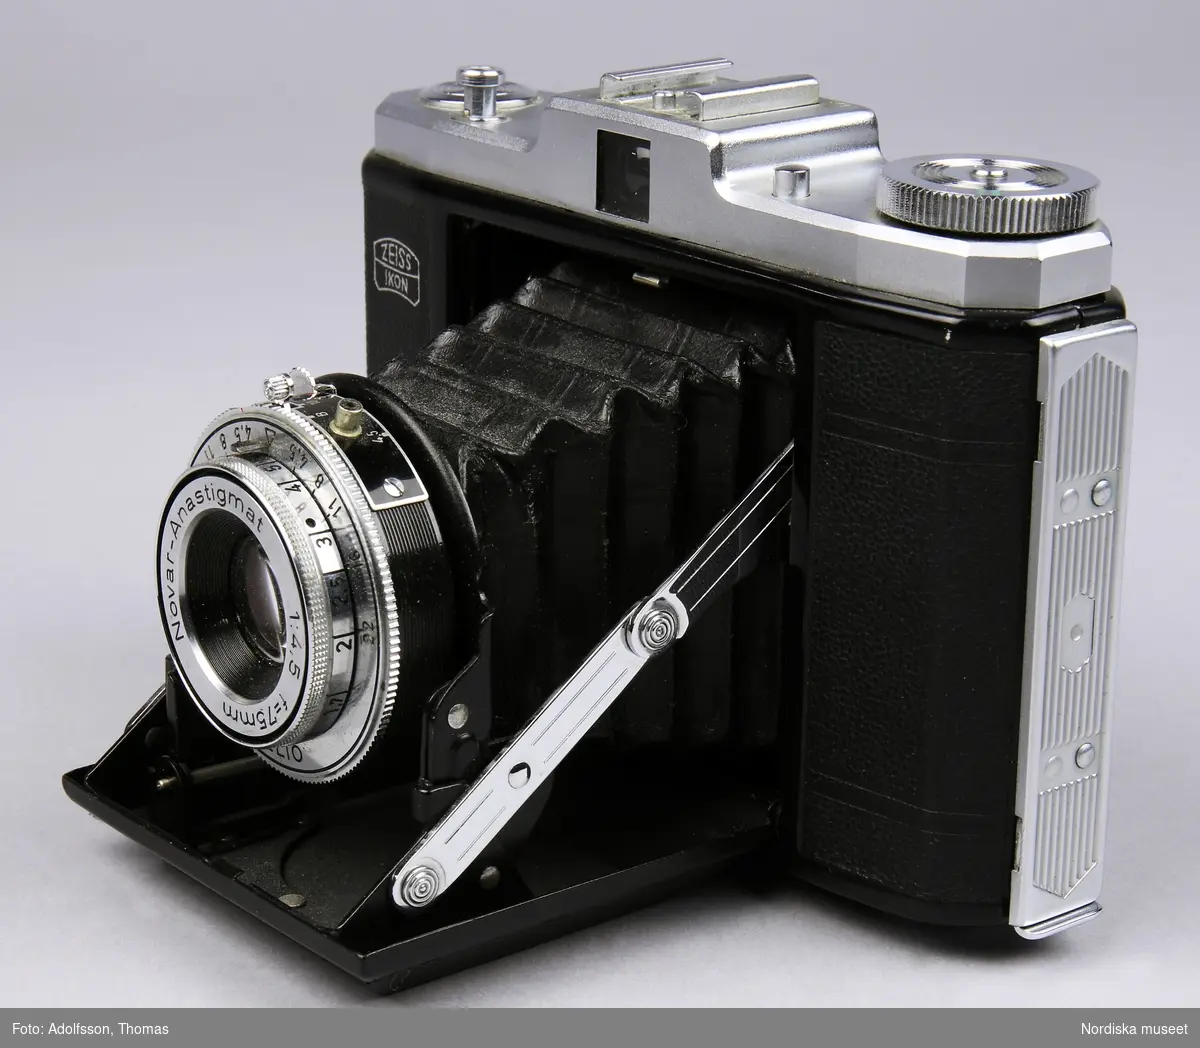 Svart bälgkamera för 60 mm bred rullfilm av märket Zeiss Ikon. Modell Nettar 518/16. Kameran har ett svart hölje av plast. Ovandel i lättmetall.  
Johanna Skoglund 2013-04-02